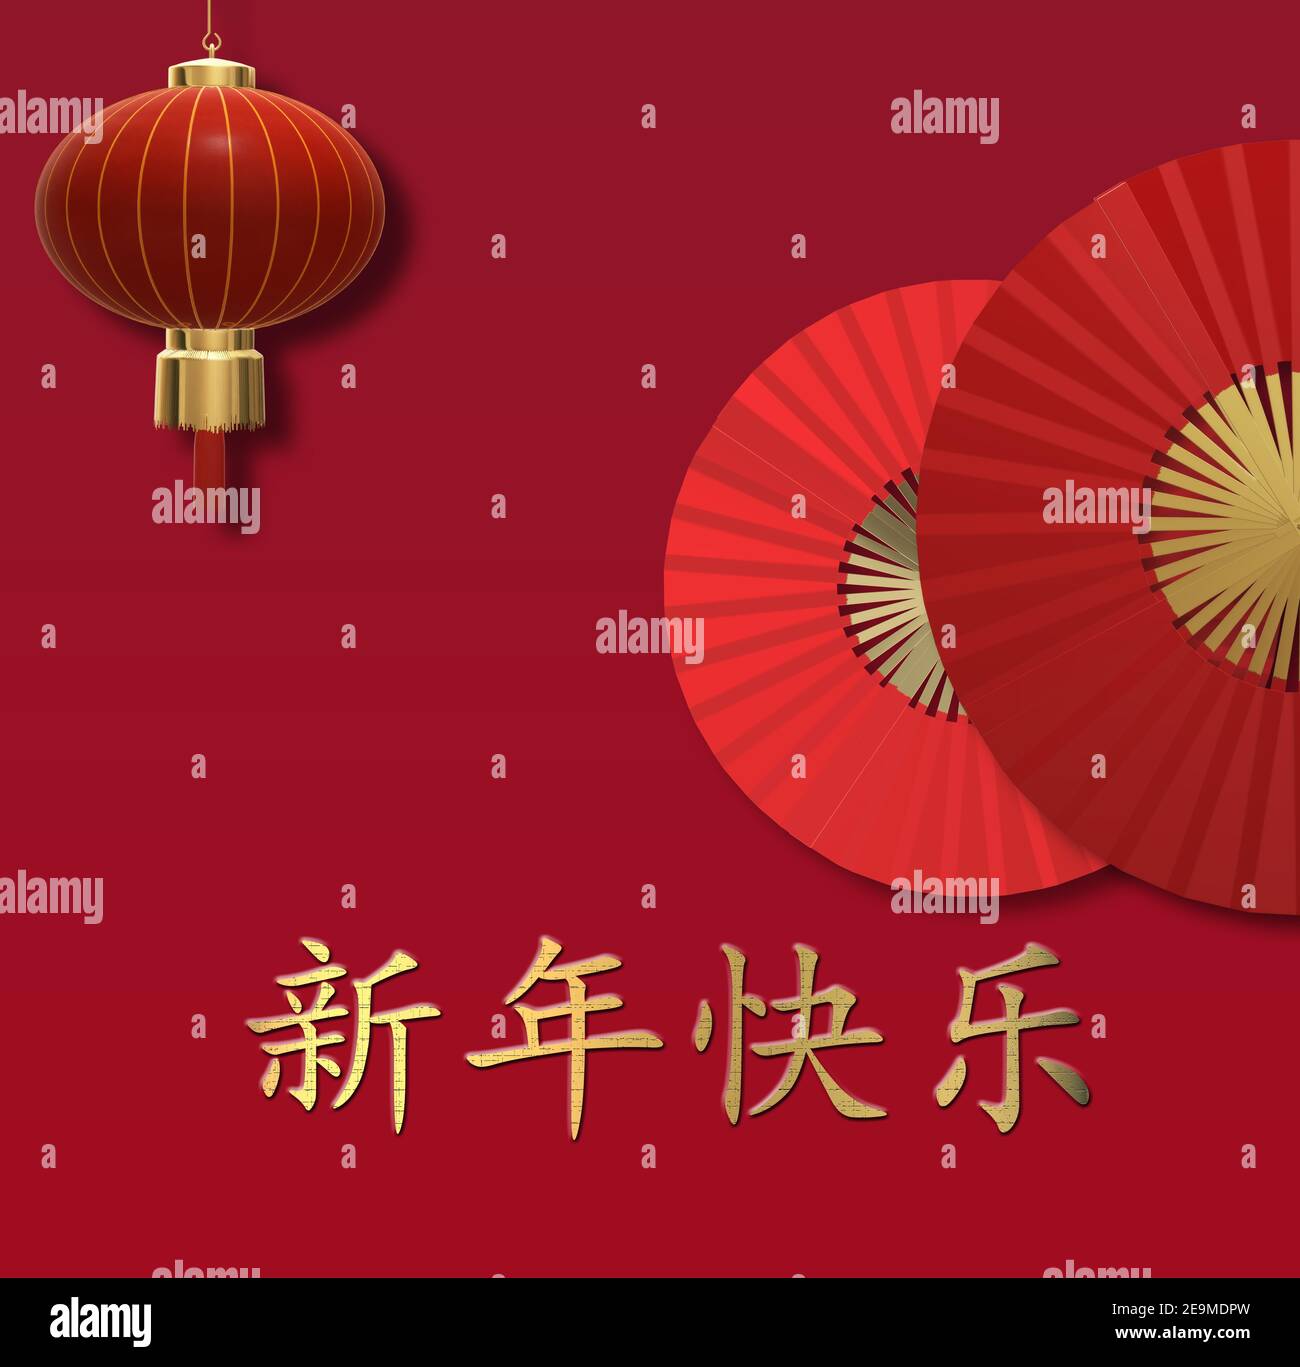 Bonne année chinoise 2021. Ventilateur, lanterne sur fond rouge. Texte chinois : bonne année chinoise. Rendu 3D Banque D'Images